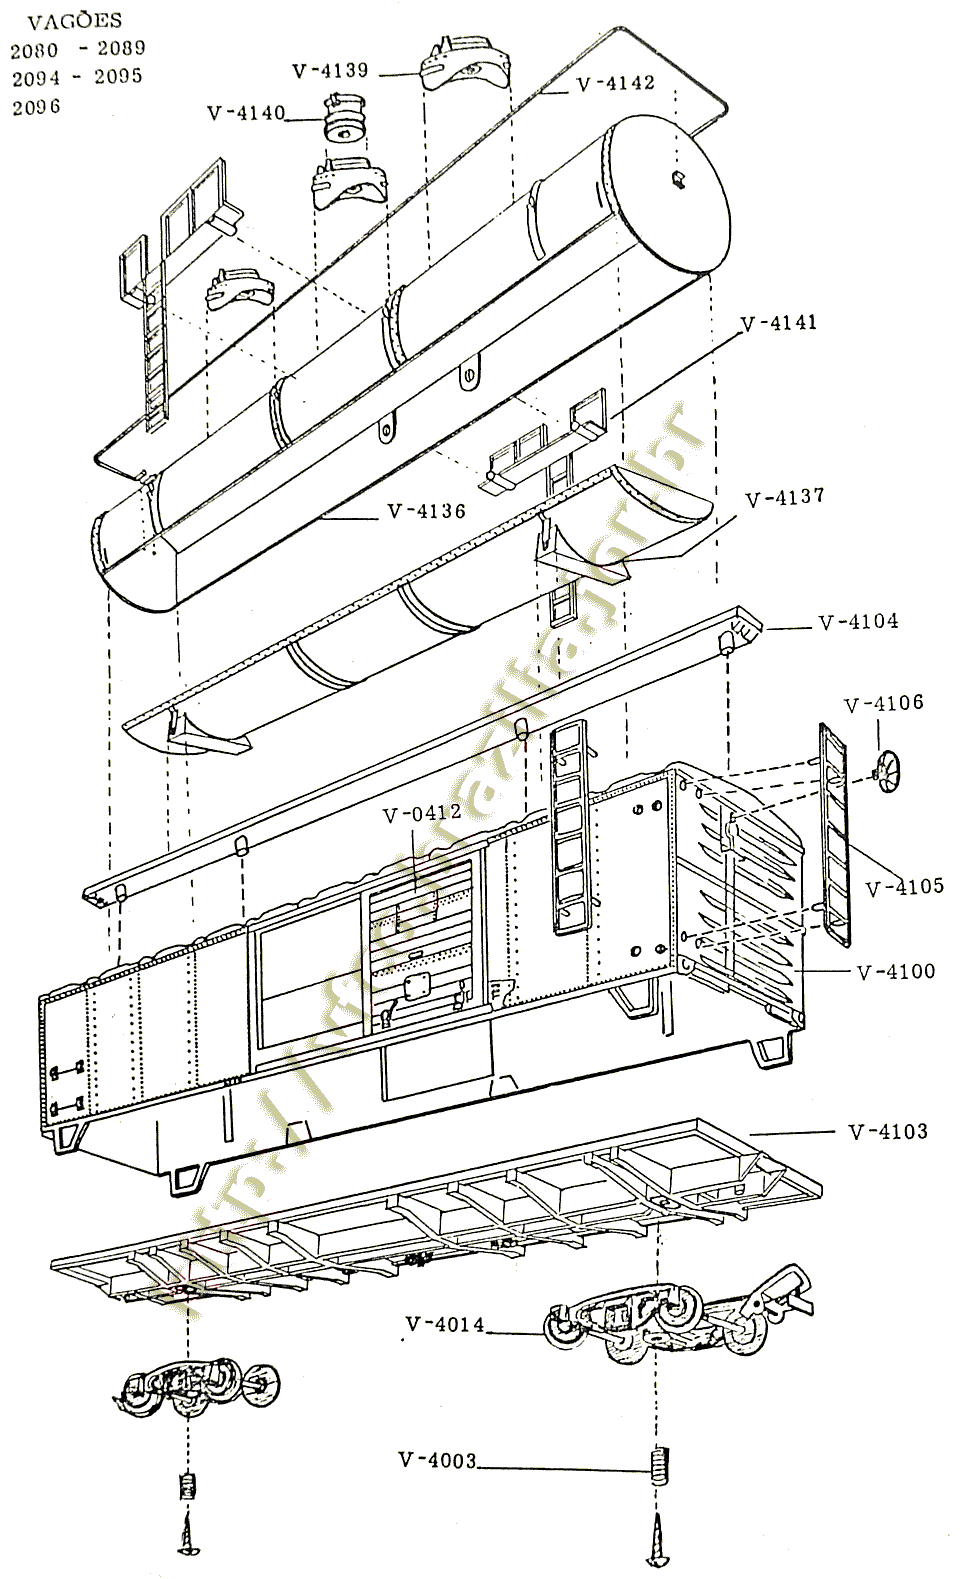 Diagramas de montagem dos vagões Box e Tanque "longos" Atma, com os códigos das peças de reposição